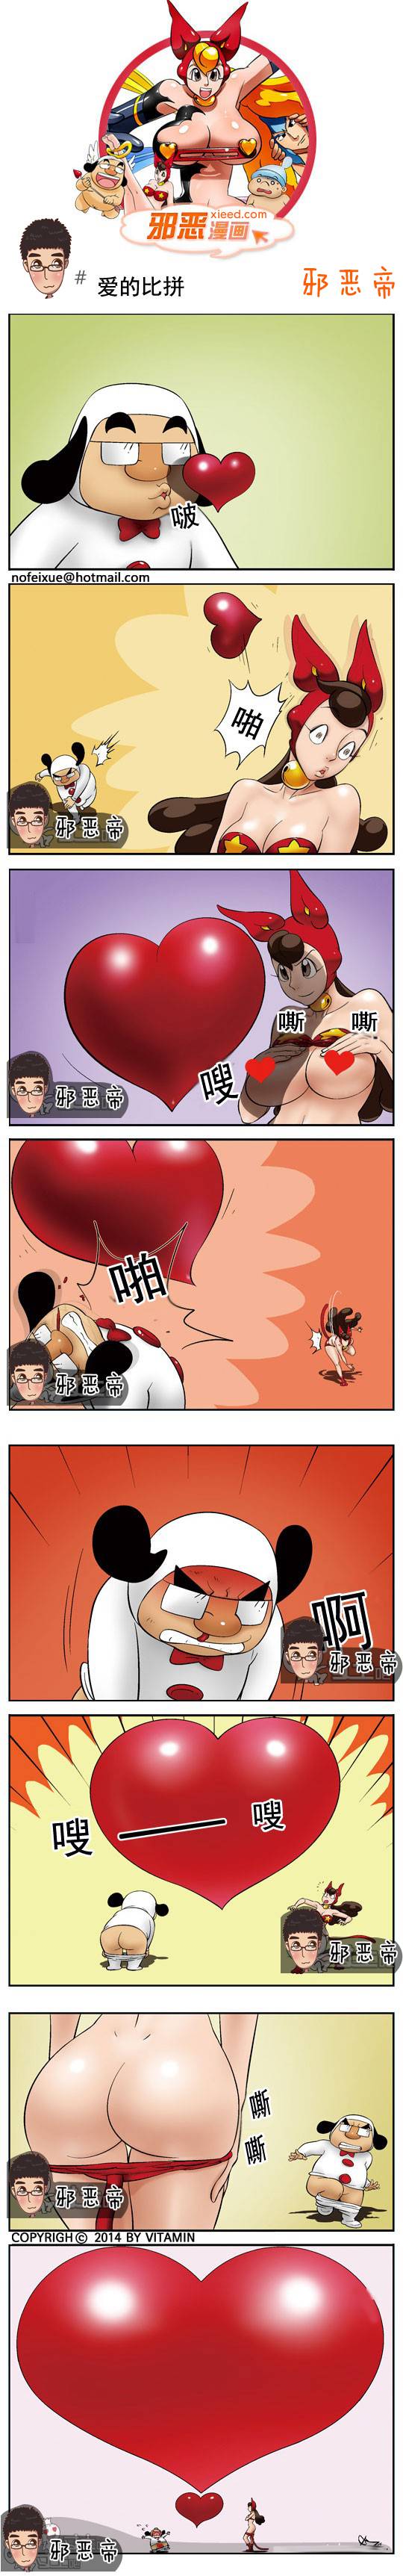 邪恶漫画爆笑囧图第347刊：比基尼